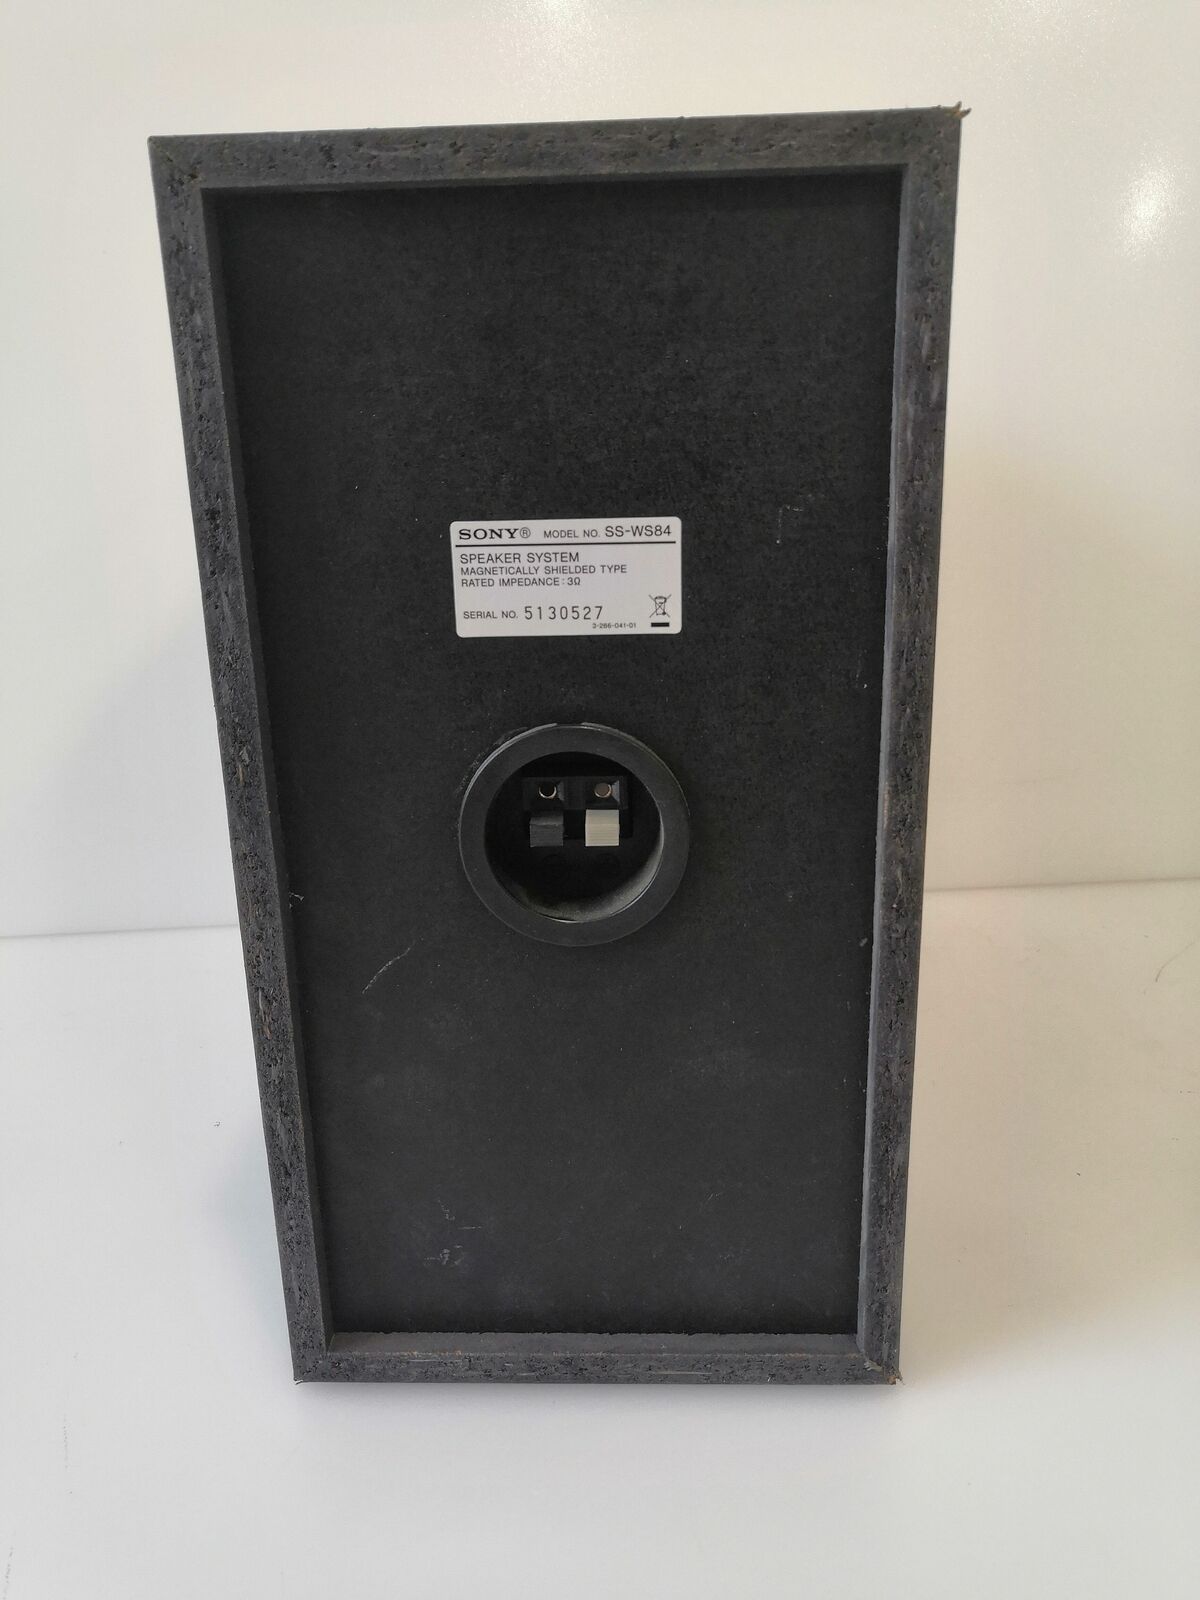 Sony Speaker/Subwoofer SS-WS84